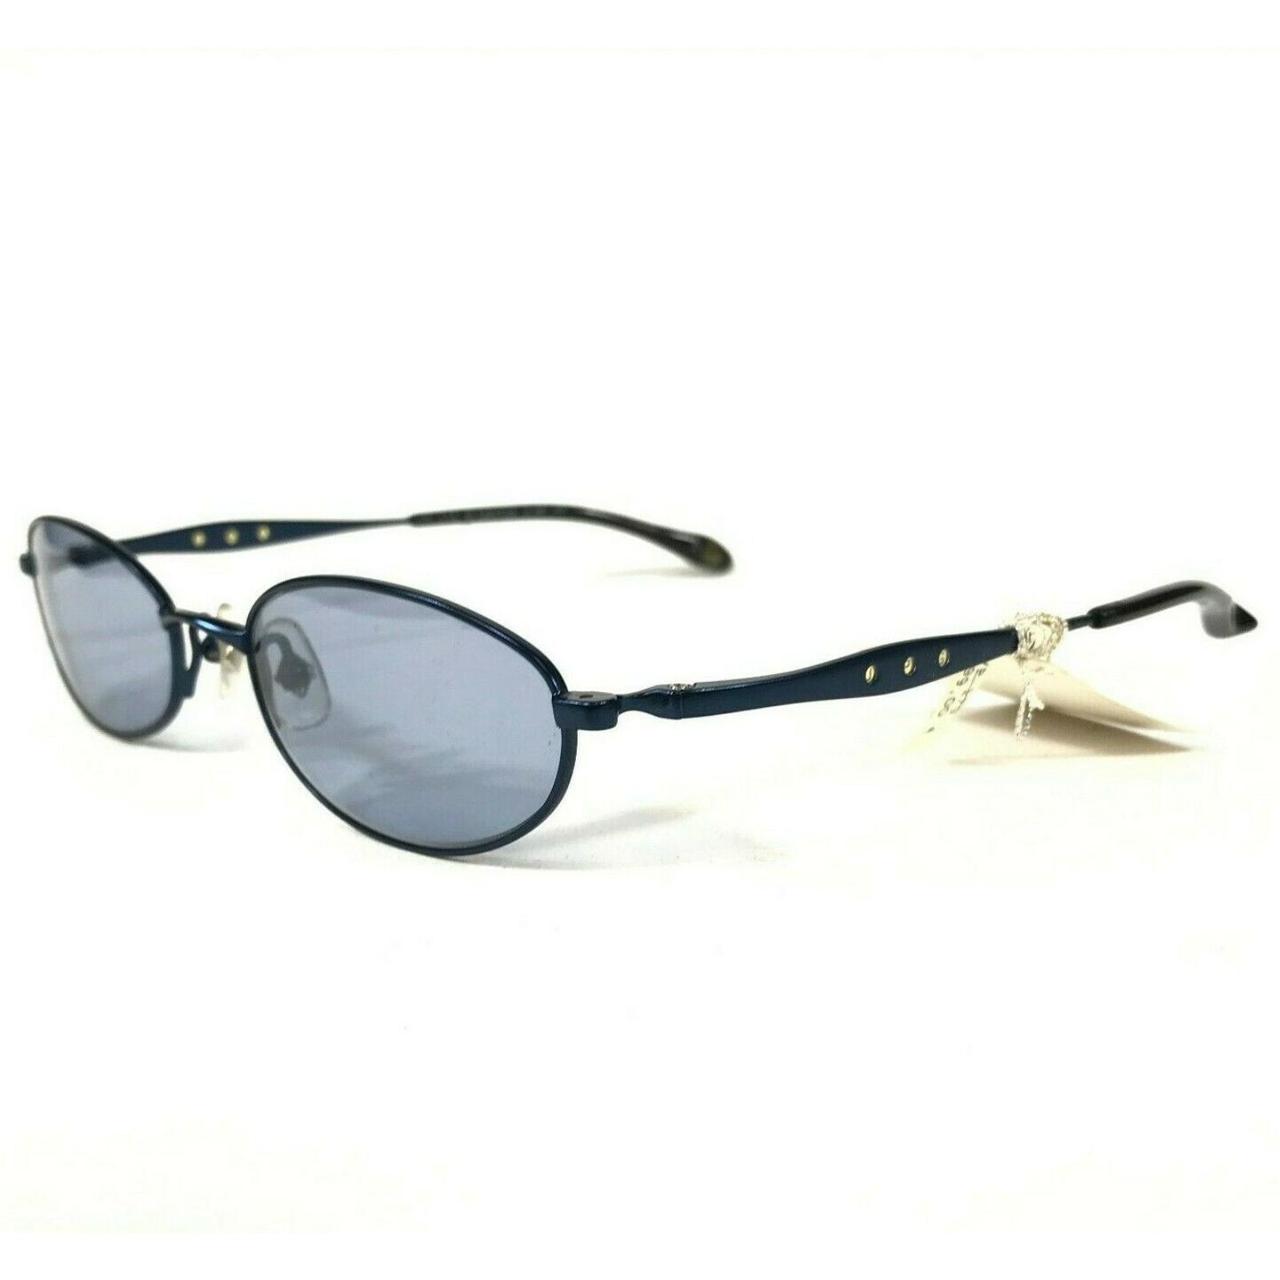 Product Image 1 - Vintage JPG Sunglasses 58-0066 Blue